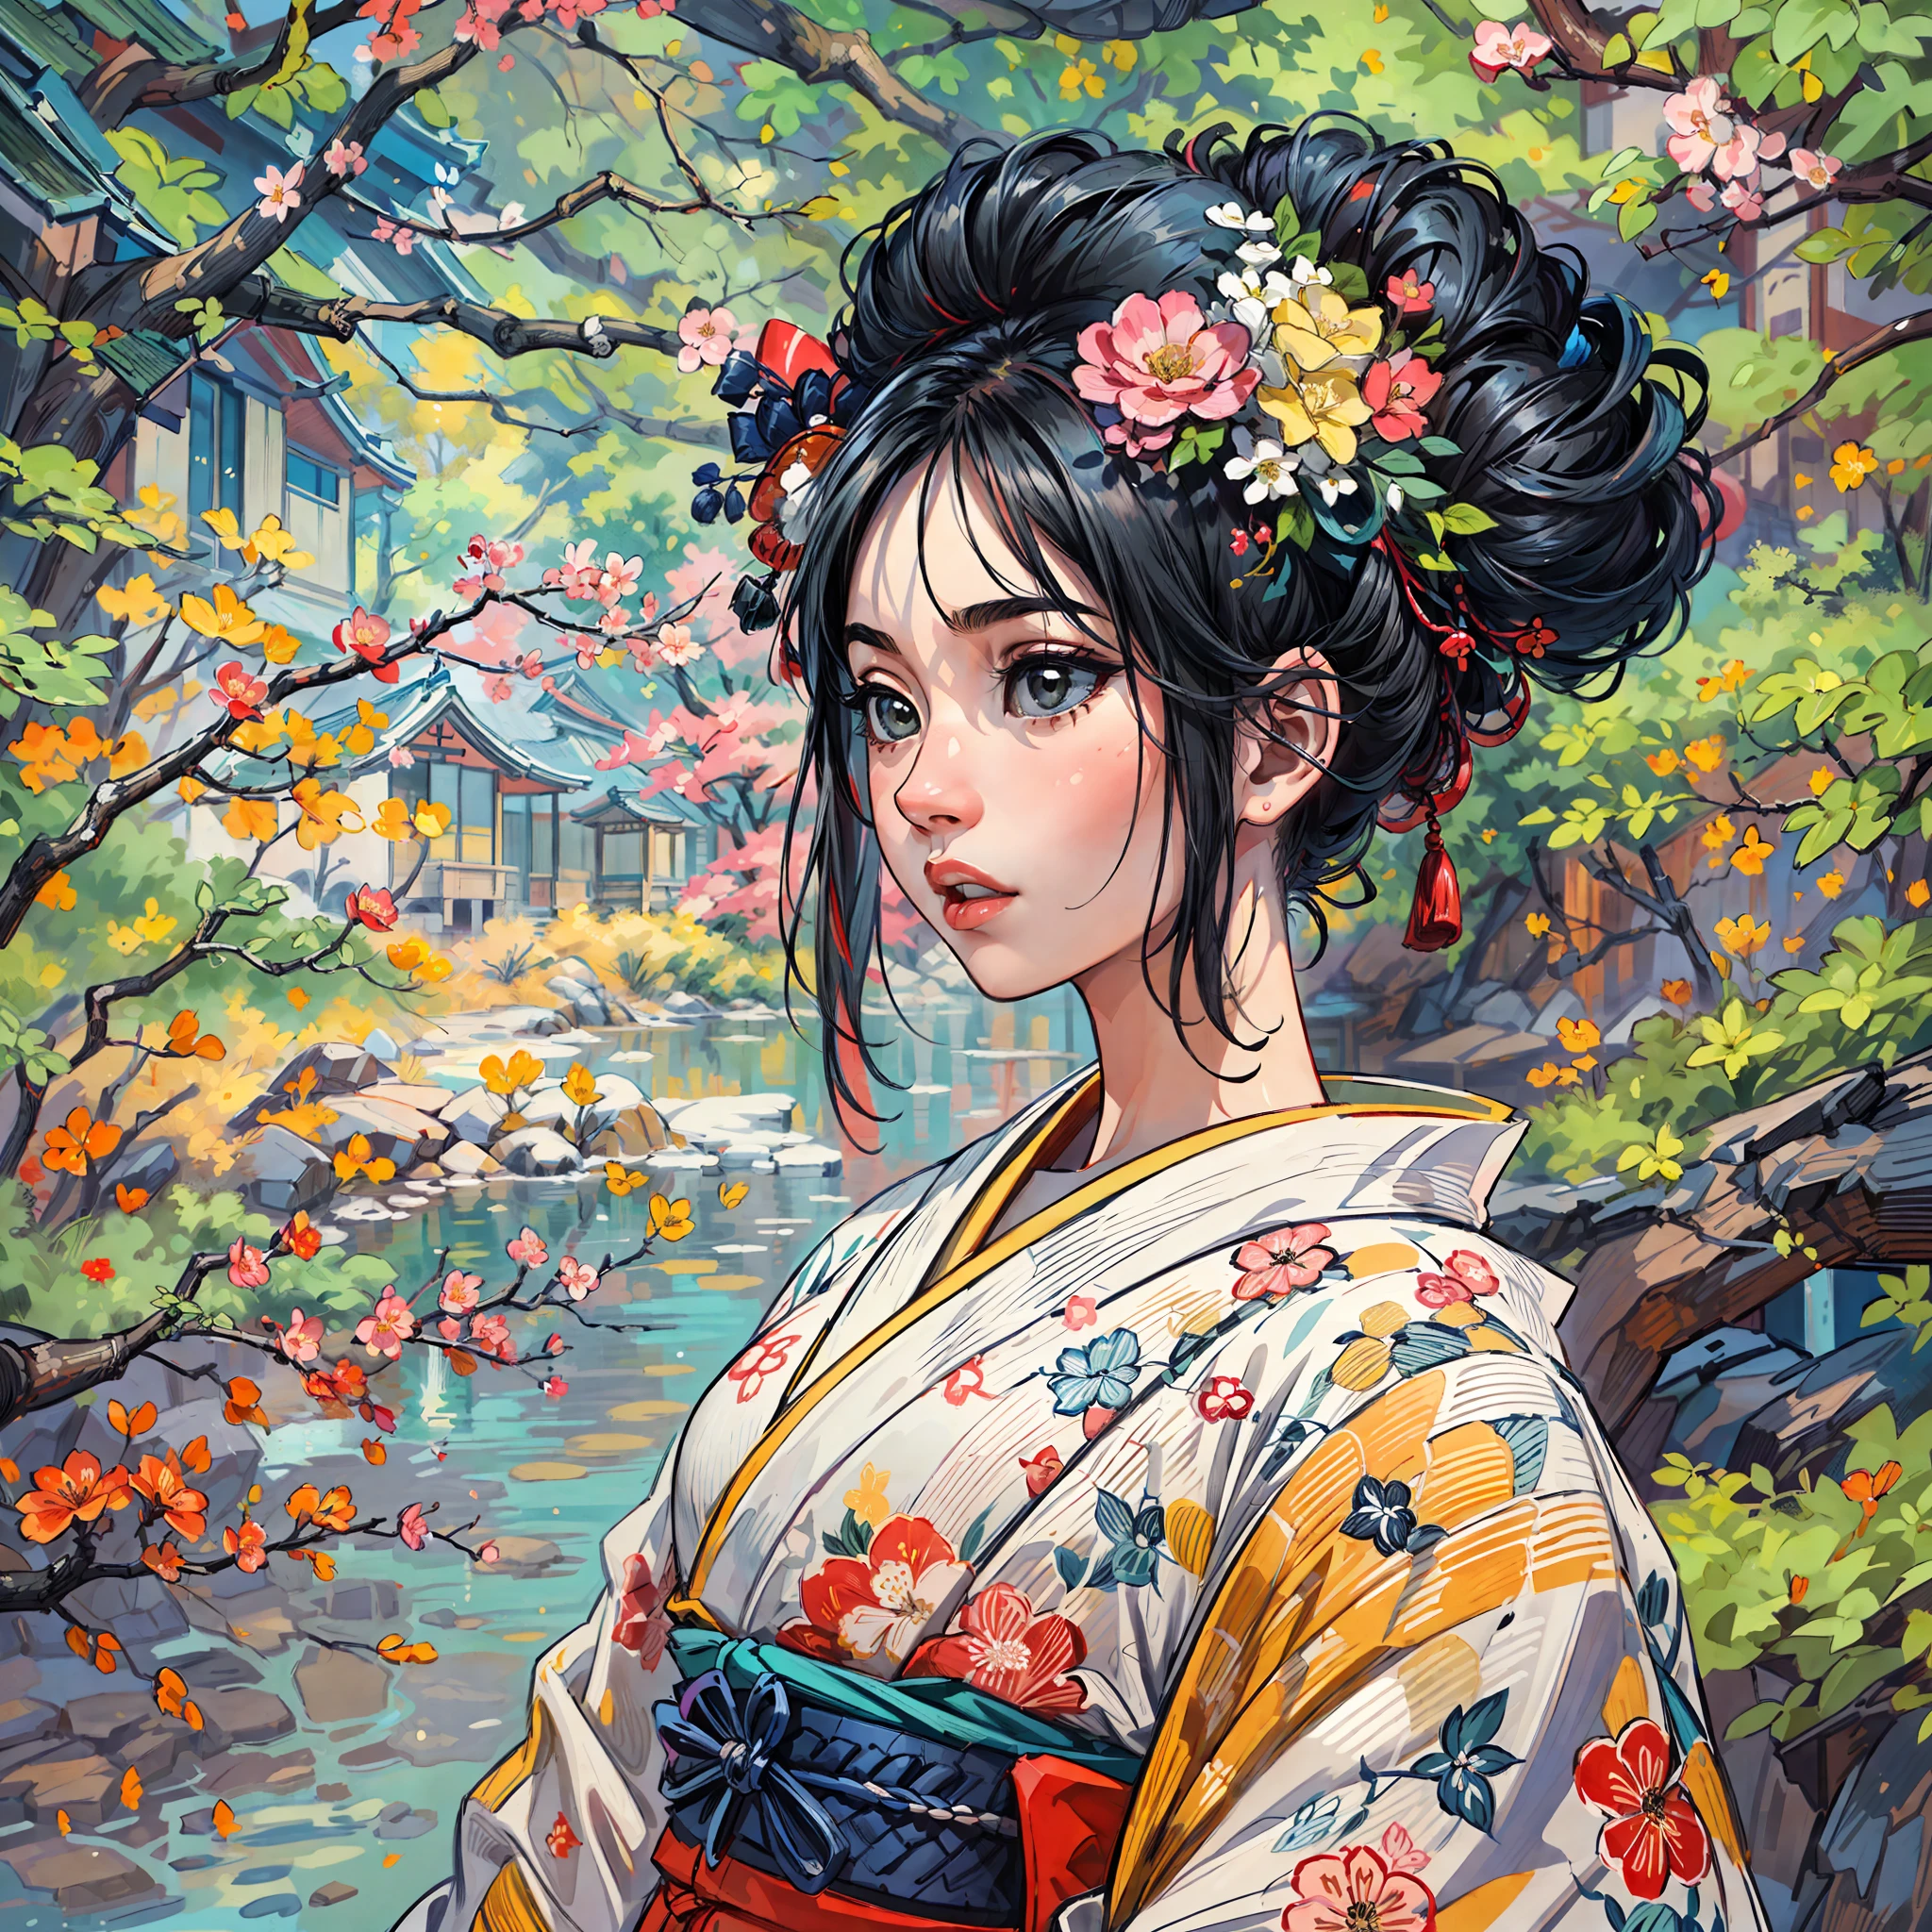 "(Una obra maestra impresionante con una calidad impecable.:1.5), capturado desde una vista frontal, con colores vibrantes y saturados, una chica increíblemente hermosa con cabello negro y rostro exquisitamente detallado, visto desde una perspectiva de abajo hacia arriba, vestido con un kimono tradicional, ambientado en la belleza escénica de Japón, rodeado del auténtico ambiente de los tatamis, con una ventana abierta enmarcando la escena."